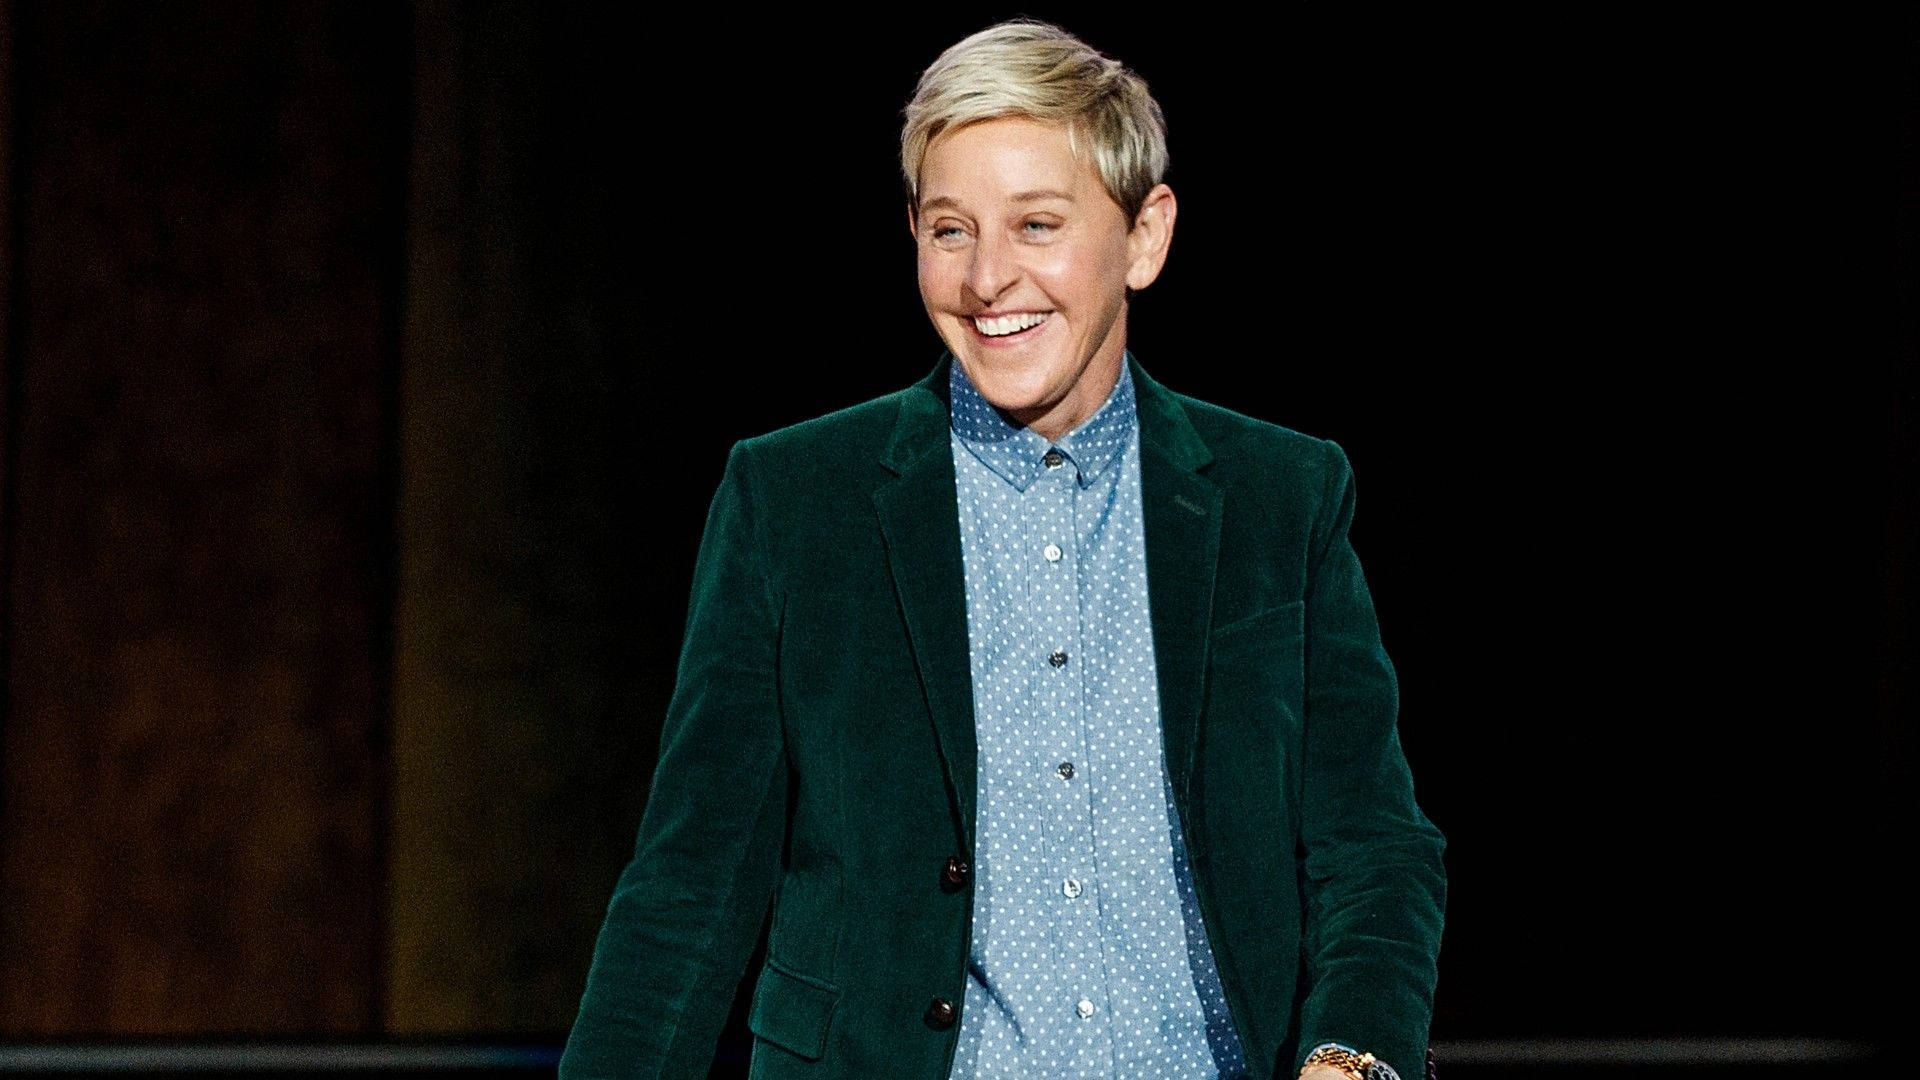 Ellen Degeneres Green Velvet Suit Background